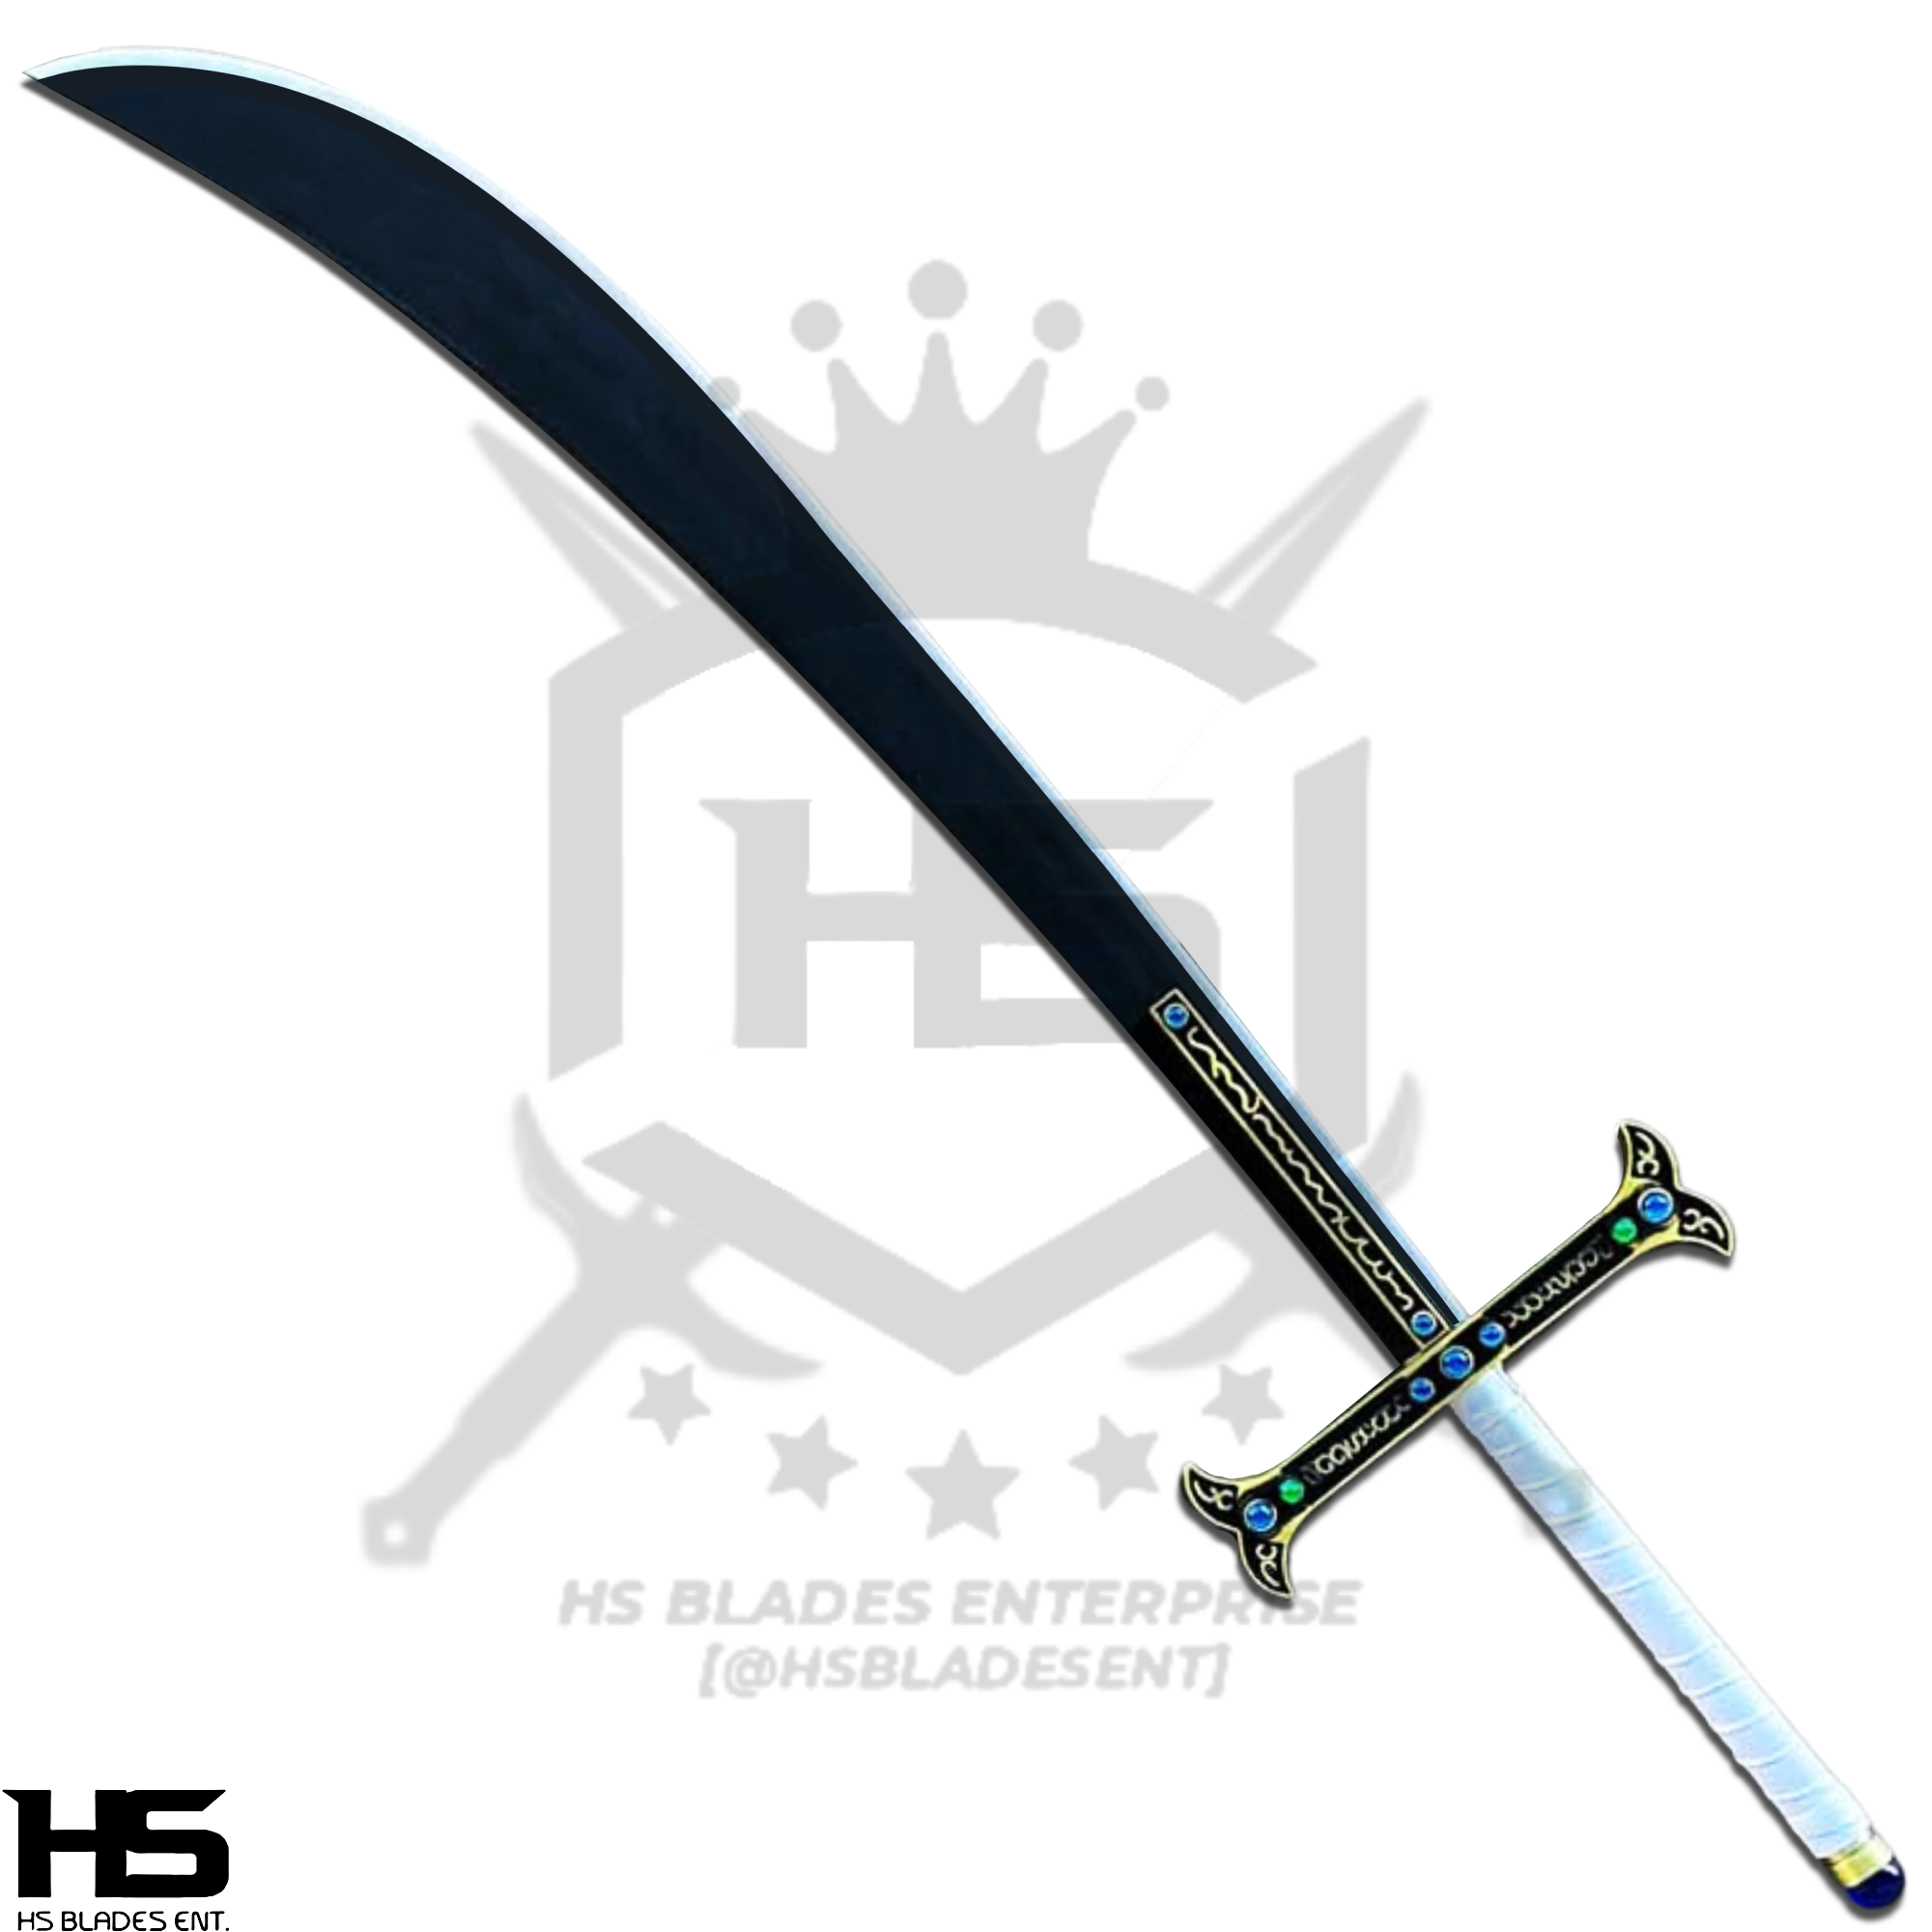 Dracule's Sword 